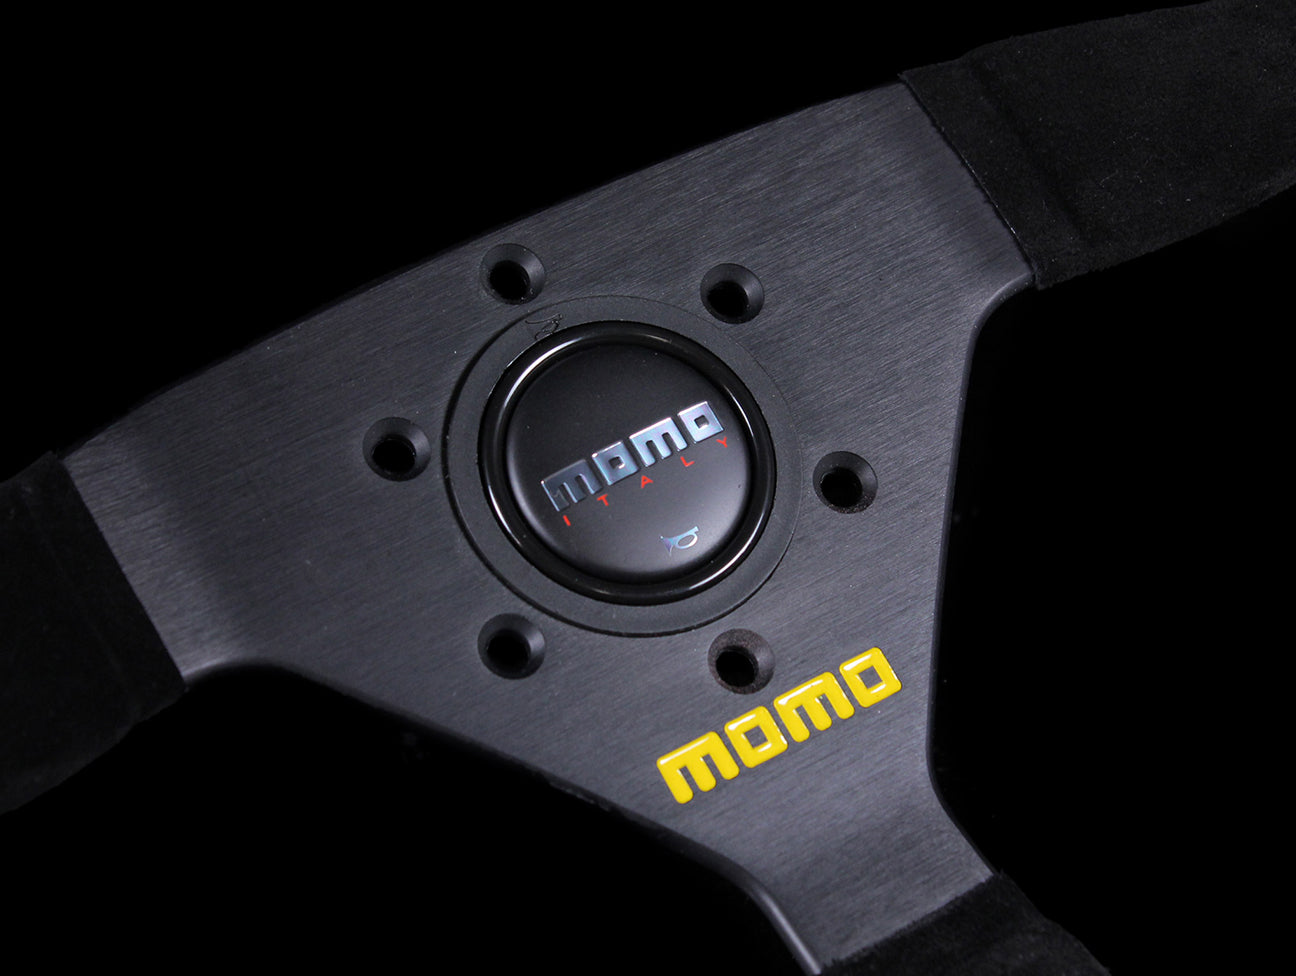 Momo Mod 69 350mm Steering Wheel